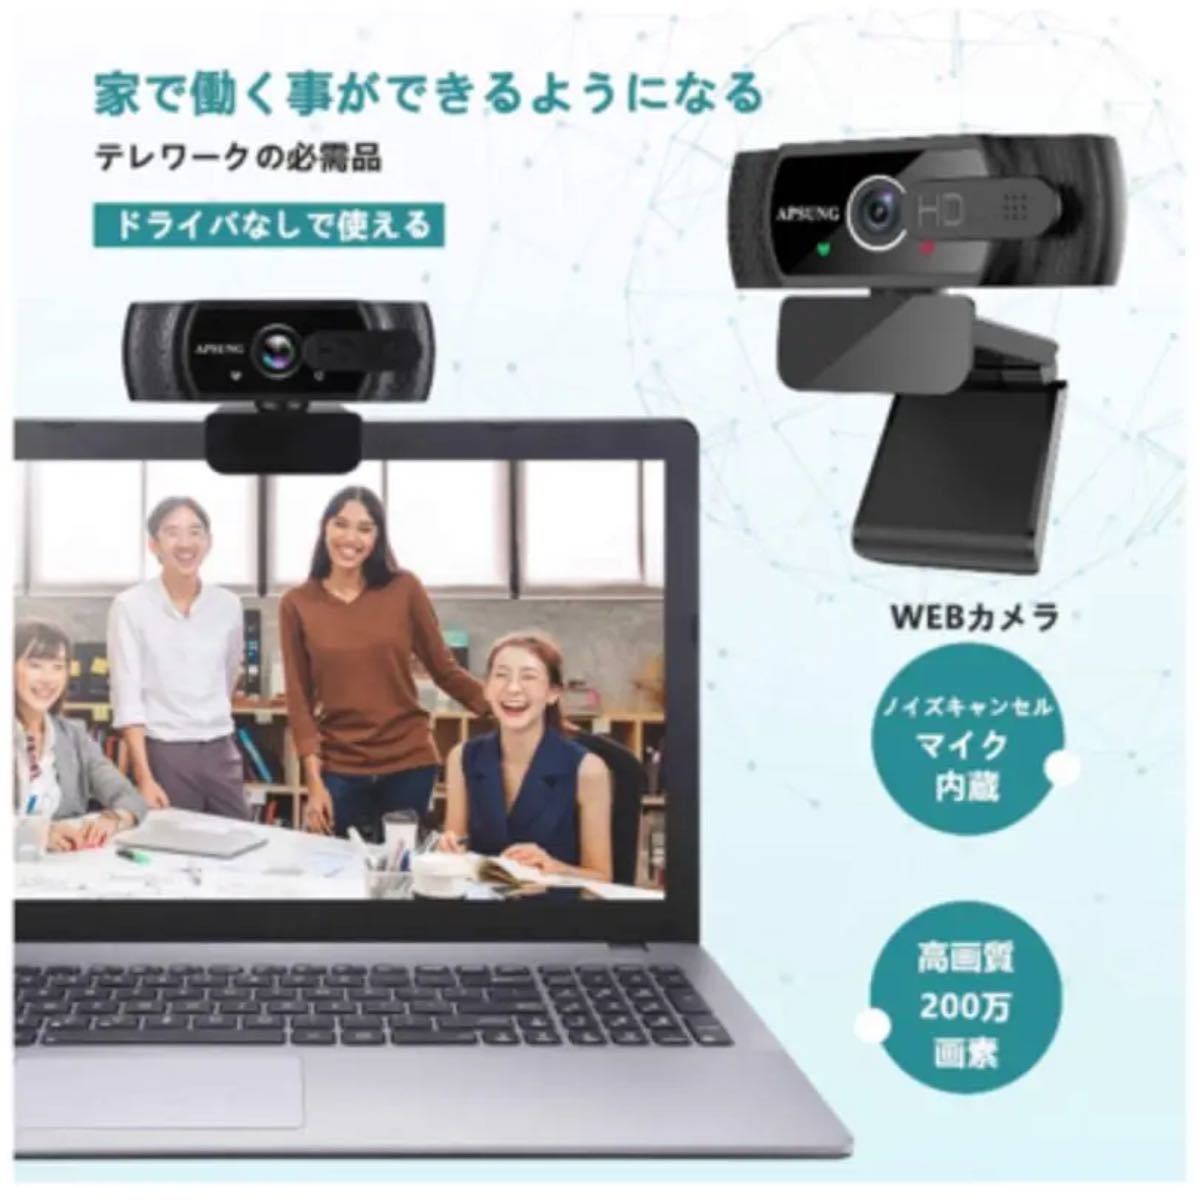 ウェブカメラ フルHD 1080P Webカメラ 30fps 200万画素 USBカメラ 自動フォーカス 内蔵マイクノイズ対策